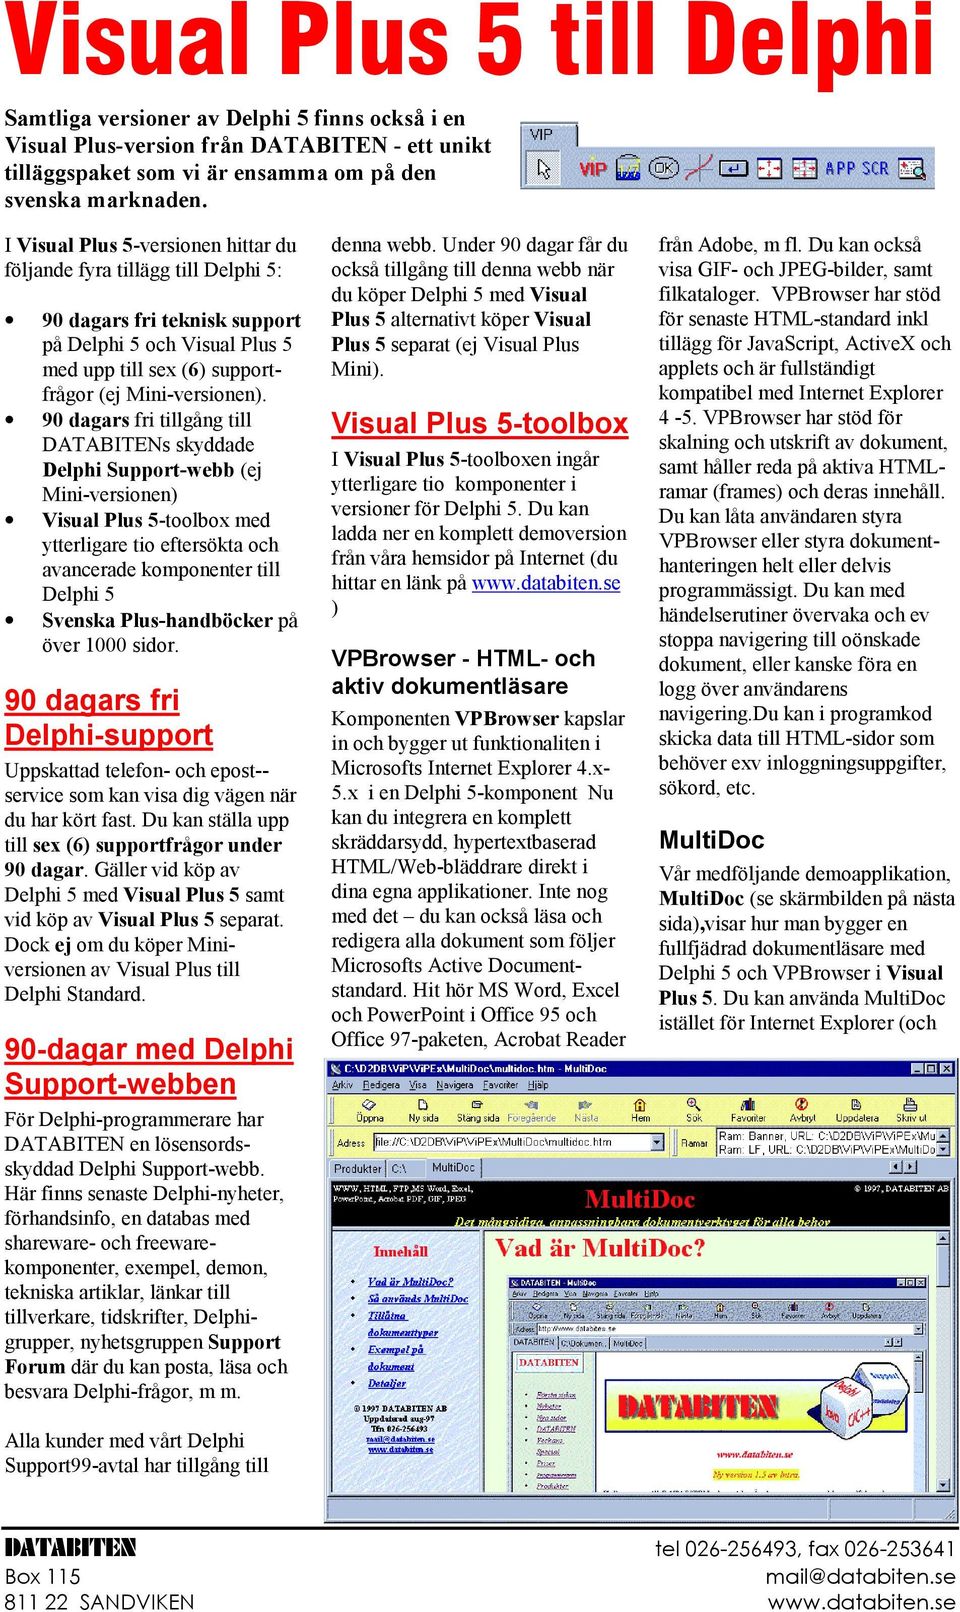 90 dagars fri tillgång till DATABITENs skyddade Delphi Support-webb (ej Mini-versionen) Visual Plus 5-toolbox med ytterligare tio eftersökta och avancerade komponenter till Svenska Plus-handböcker på